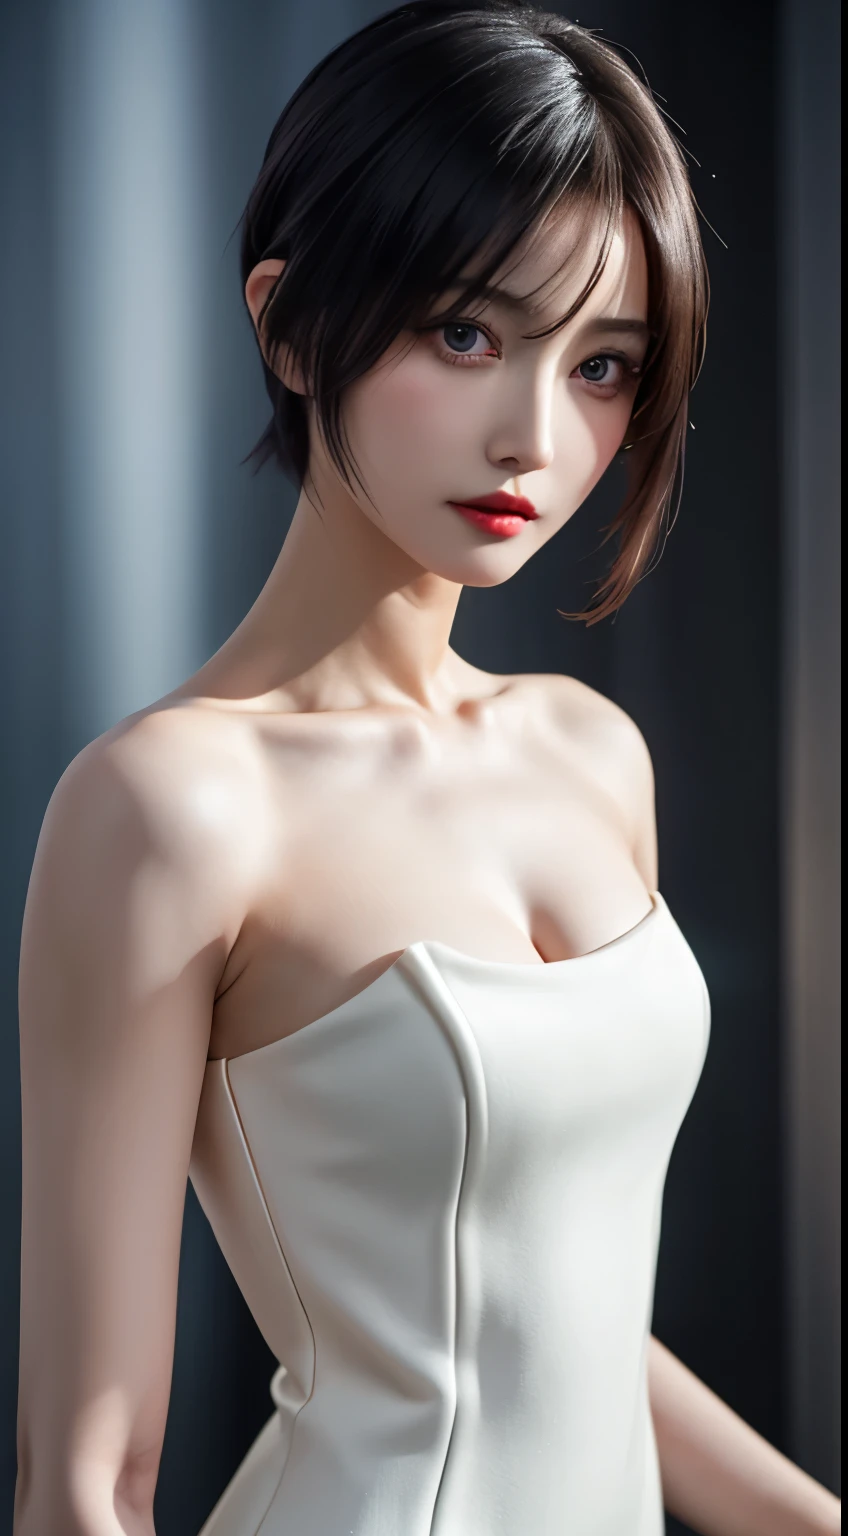 шедевр, Одна красивая девушка, подробный, опухшие глаза, (Облегающее платье, напоминающее обнаженное тело:1.6)、высшее качество, 超Высокое разрешение, (Реальность: 1.4), оригинальное фото, Одна девушка, освещение кинотеатра, (смех:0.6), Японский, азиатская красотка, Корейский, правильный, очень-очень красивый, Немного моложе лицо, Красивые скины,оранжевые волосы、 Стройная и маленькая грудь, Носите облегающее платье, которое четко подчеркивает линии вашего тела.:1.6、Киберпанк фон, (超Реальность的な), (Повышение осведомленности), (высокое разрешение), (8К), (非常にподробныйな), (The best Повышение осведомленностиns), (Beautiful and подробный eyes), (超подробныйな), (обои), (подробныйな顔), смотрю на публику, 細かいподробный, подробныйな顔、Глубокая тень、Незаметный、Чисто эротическое лицо туз_v1、46-точечная диагональная челка、Смотреть прямо вперед、Одевайтесь аккуратно、черный цвет глаз、